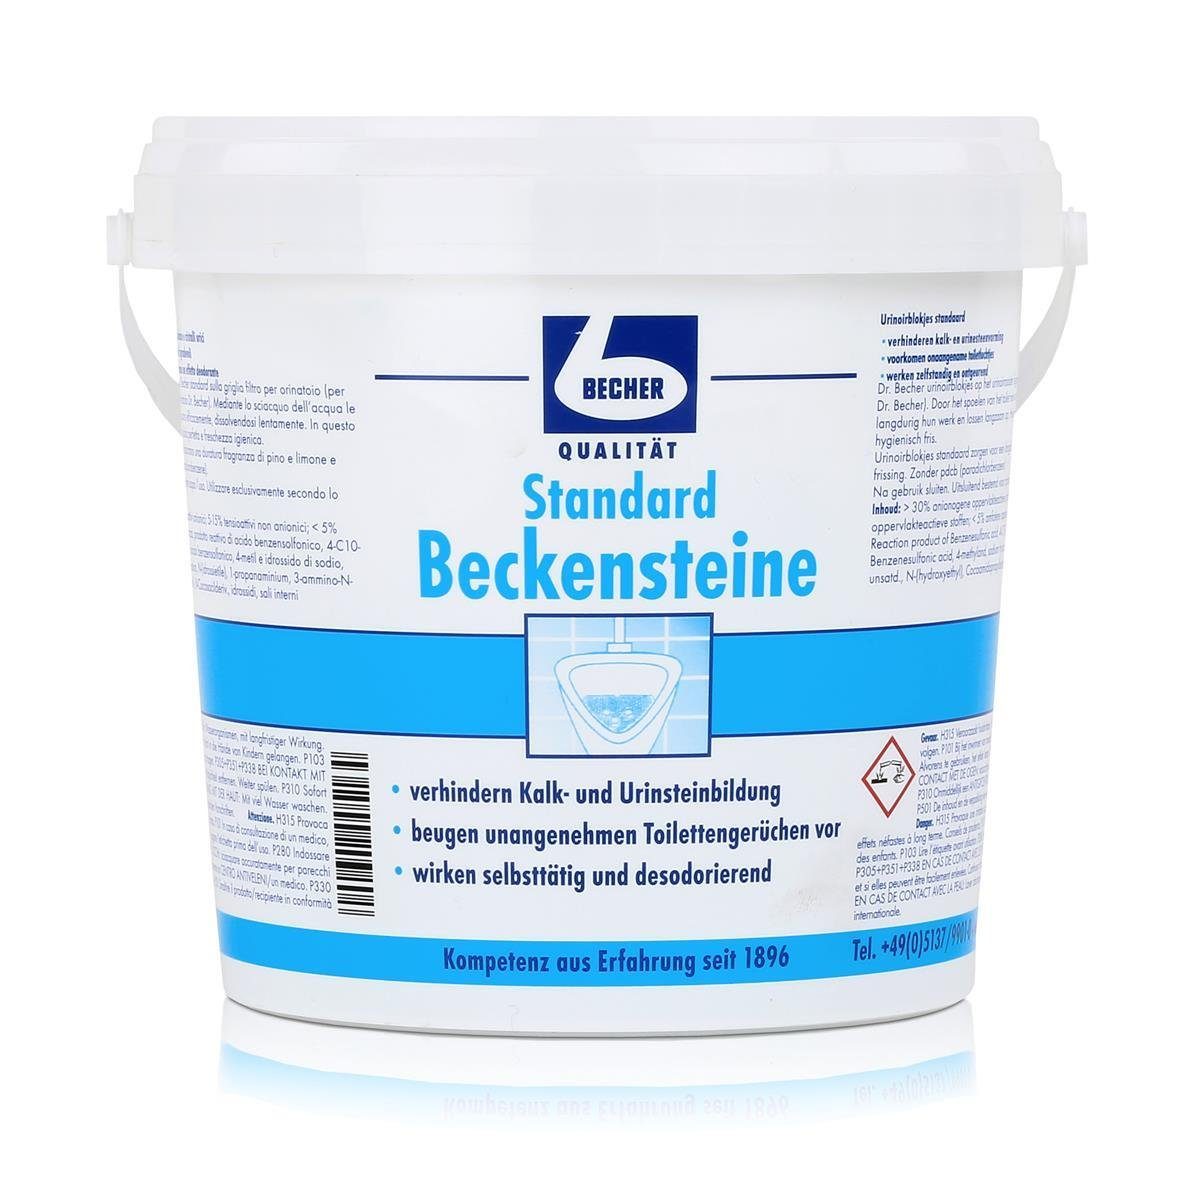 Dr. Becher Dr. Becher Beckensteine Standard für Urinale 30 stk. (1er Pack) WC-Reiniger